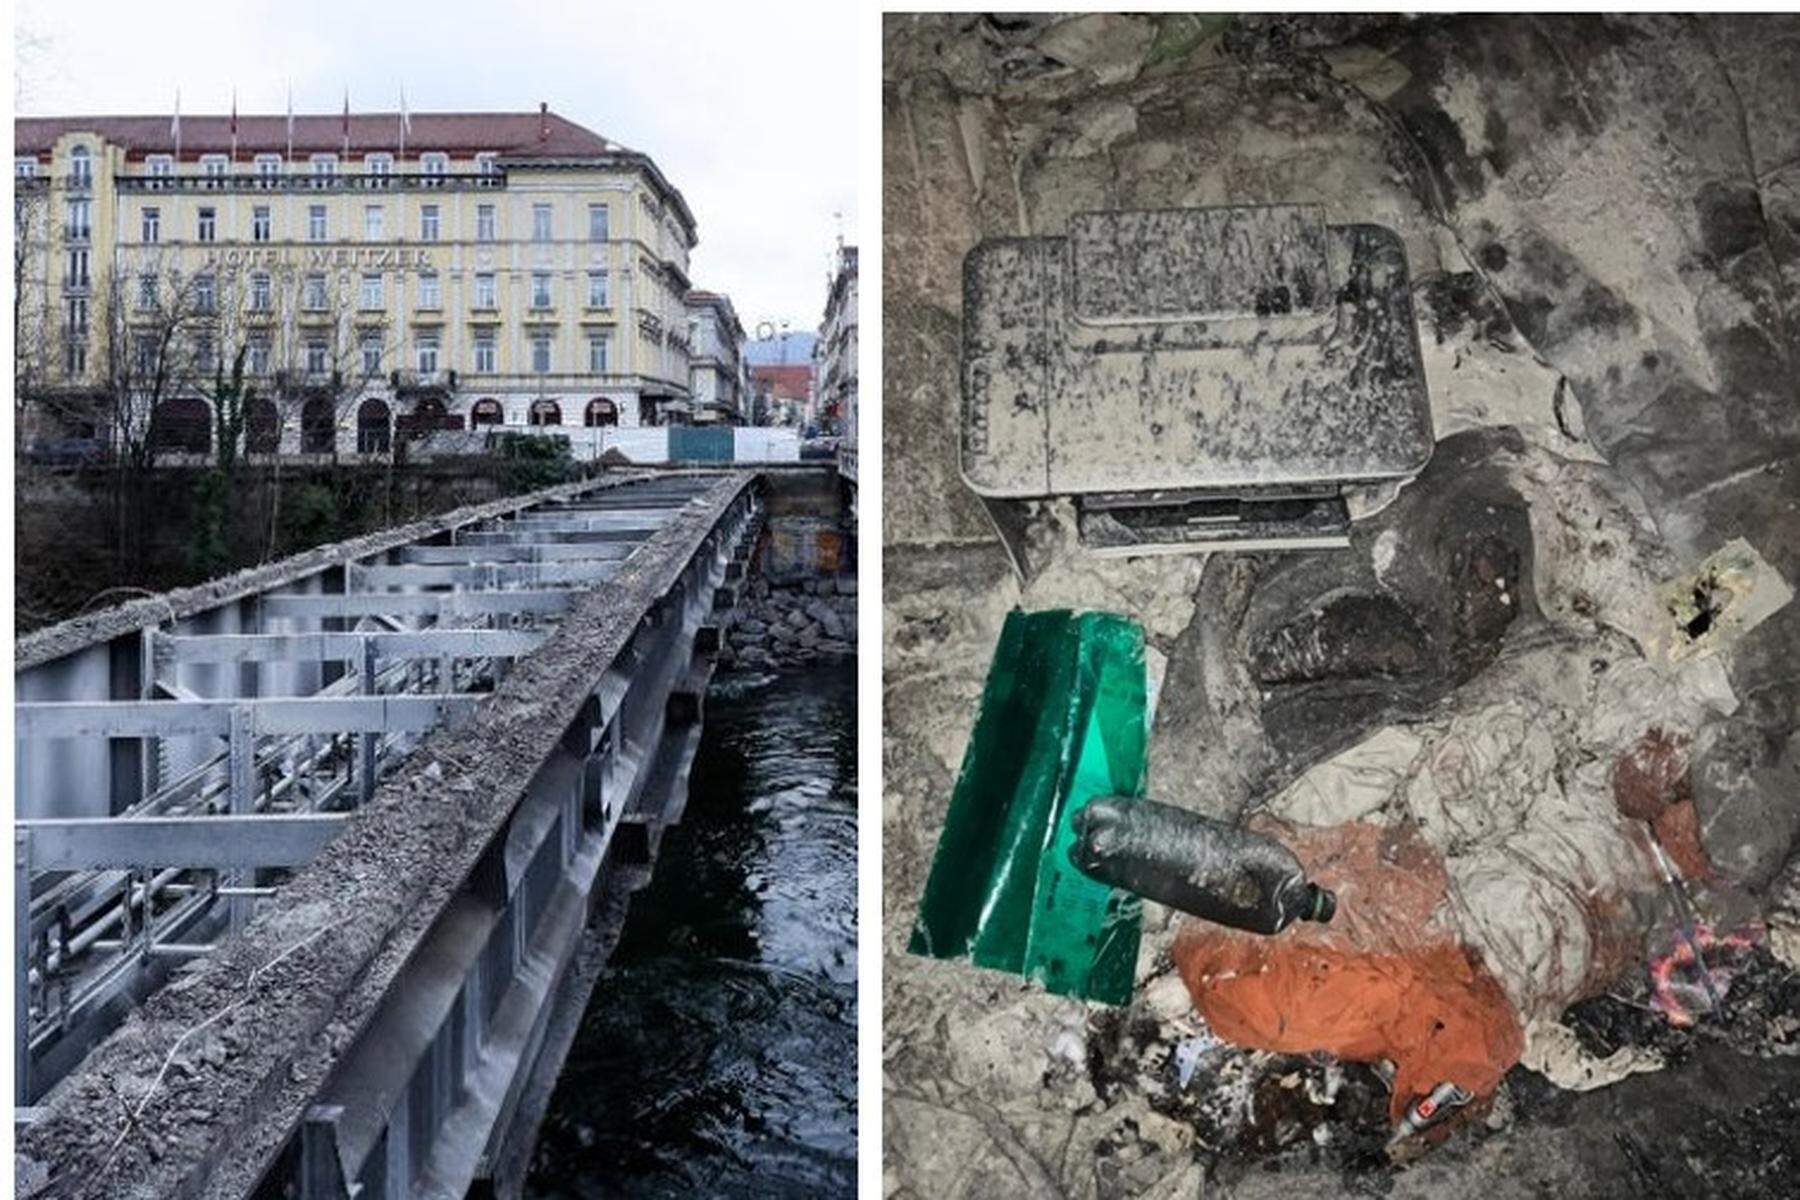 Kuriose Fundsachen | Drucker und gefälschte Banknote bei Abbau von Grazer Brücke gefunden